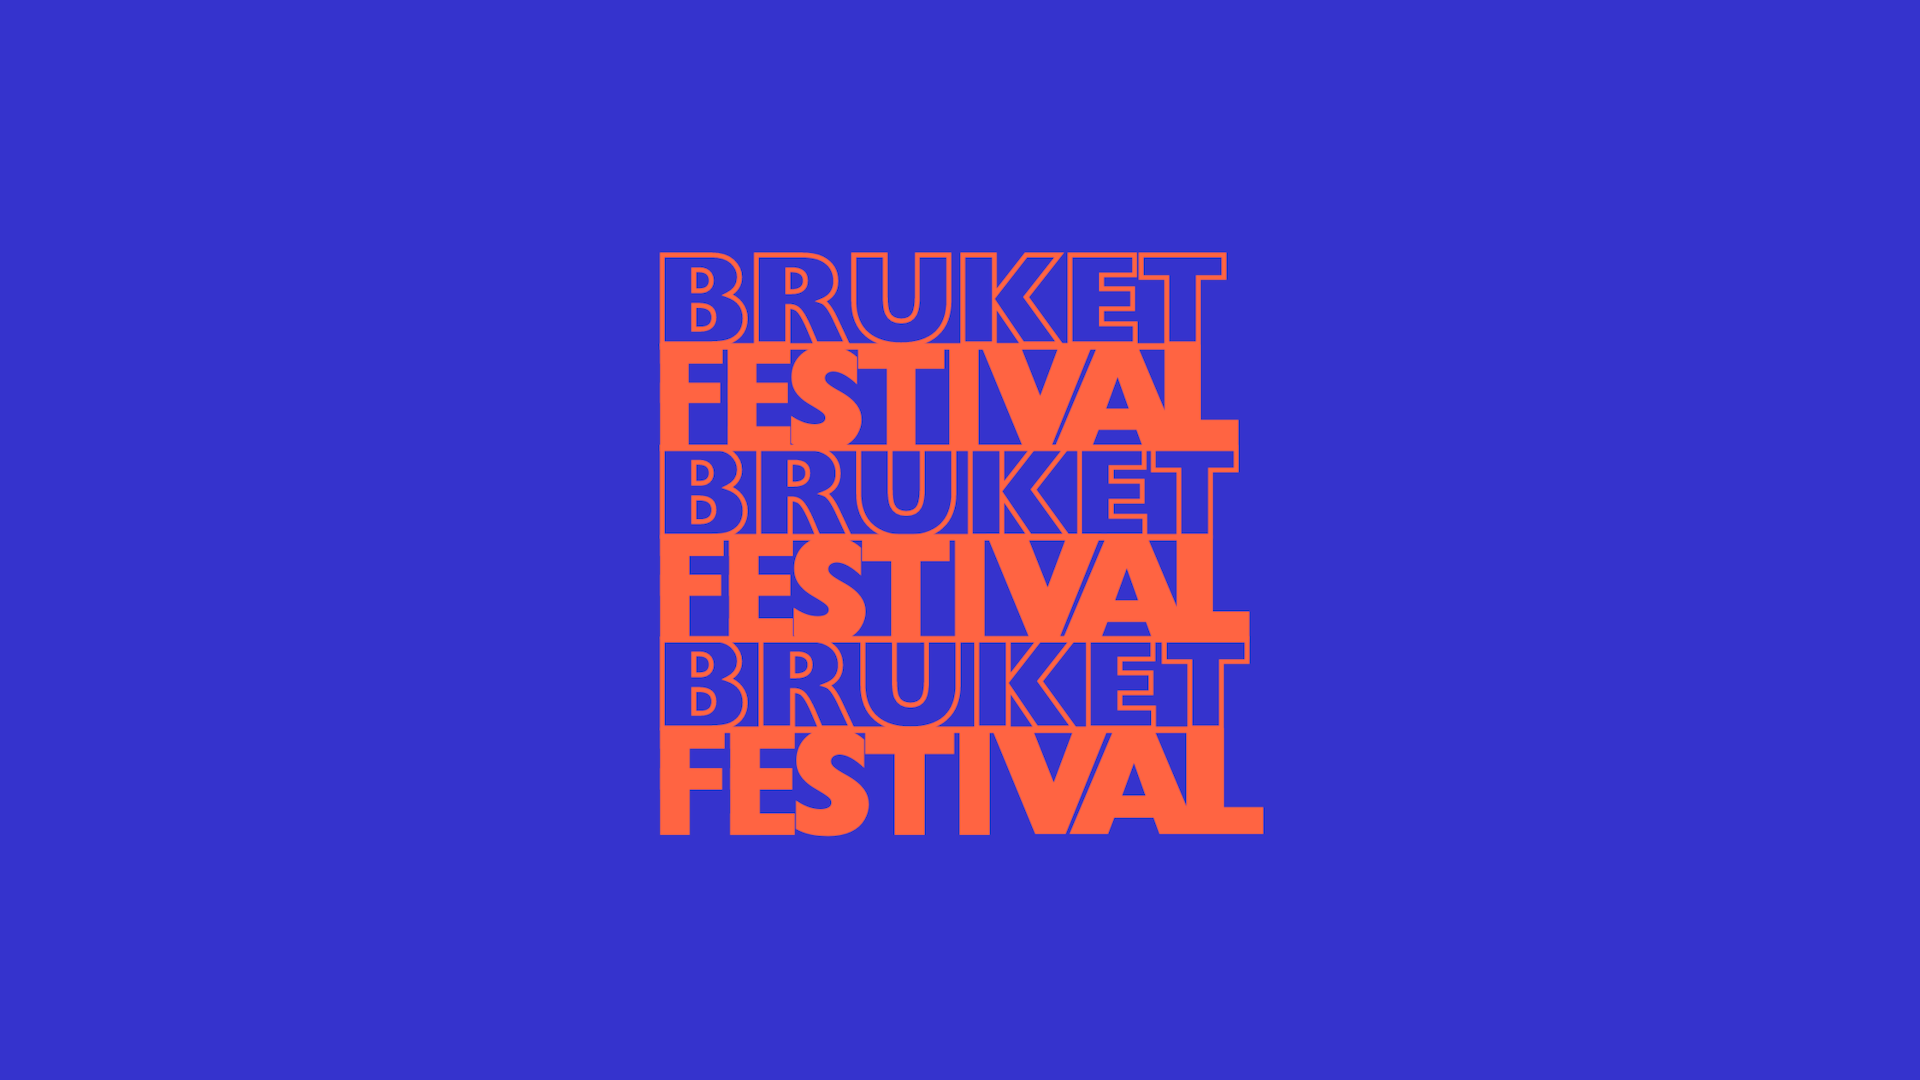 BRUKET Festival